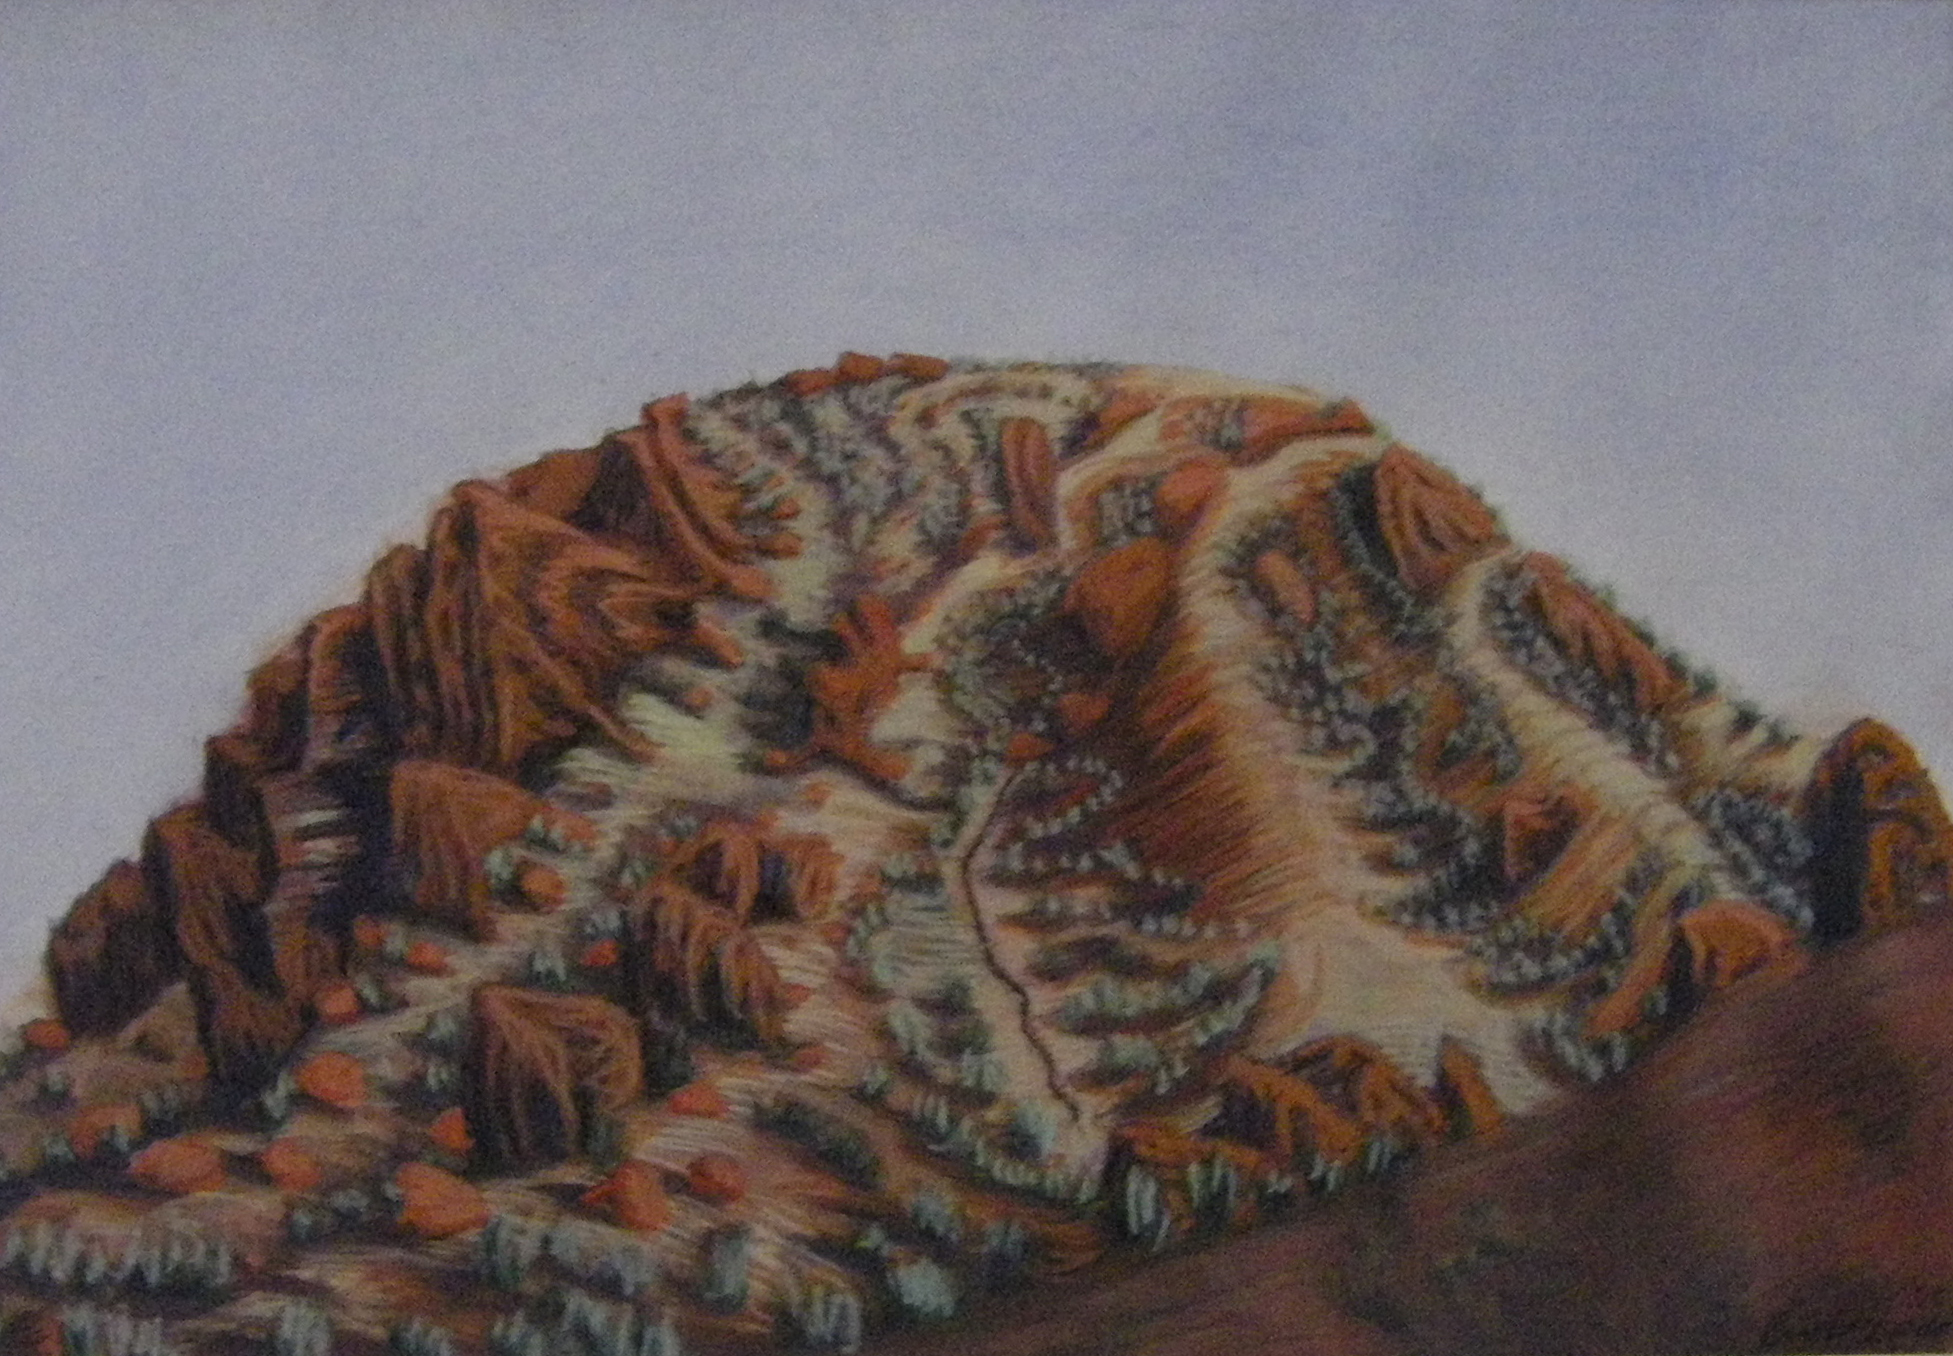 Arkaroola gouache on paper 60x80cm2015